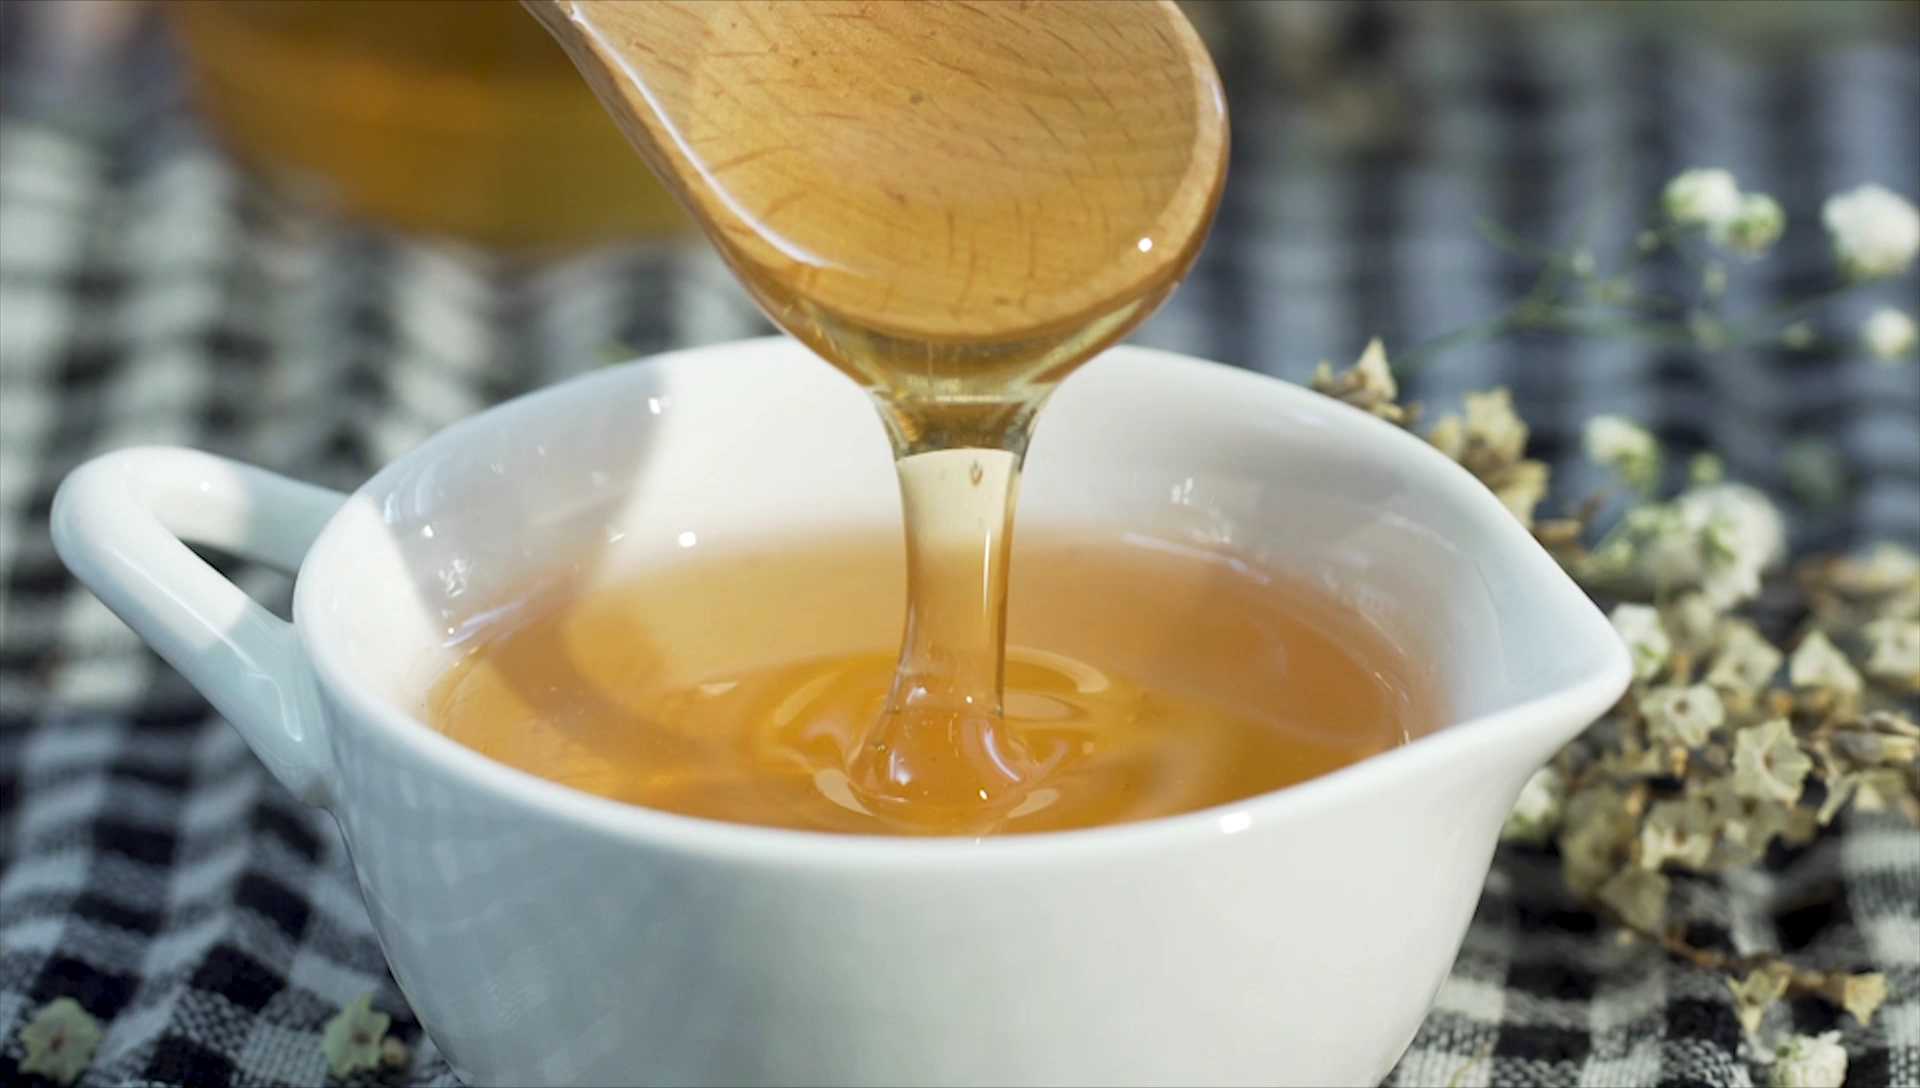 2 chai  Mật ong nguyên chất hoa rừng tây bắc Phúc Khang  (720g + 350g ) - Hàng Chính Hãng  - Mật ong sạch , mật ong cao cấp đạt tiêu chuẩn xuất khẩu - Bồi bổ cơ thể , tăng sức đề kháng 